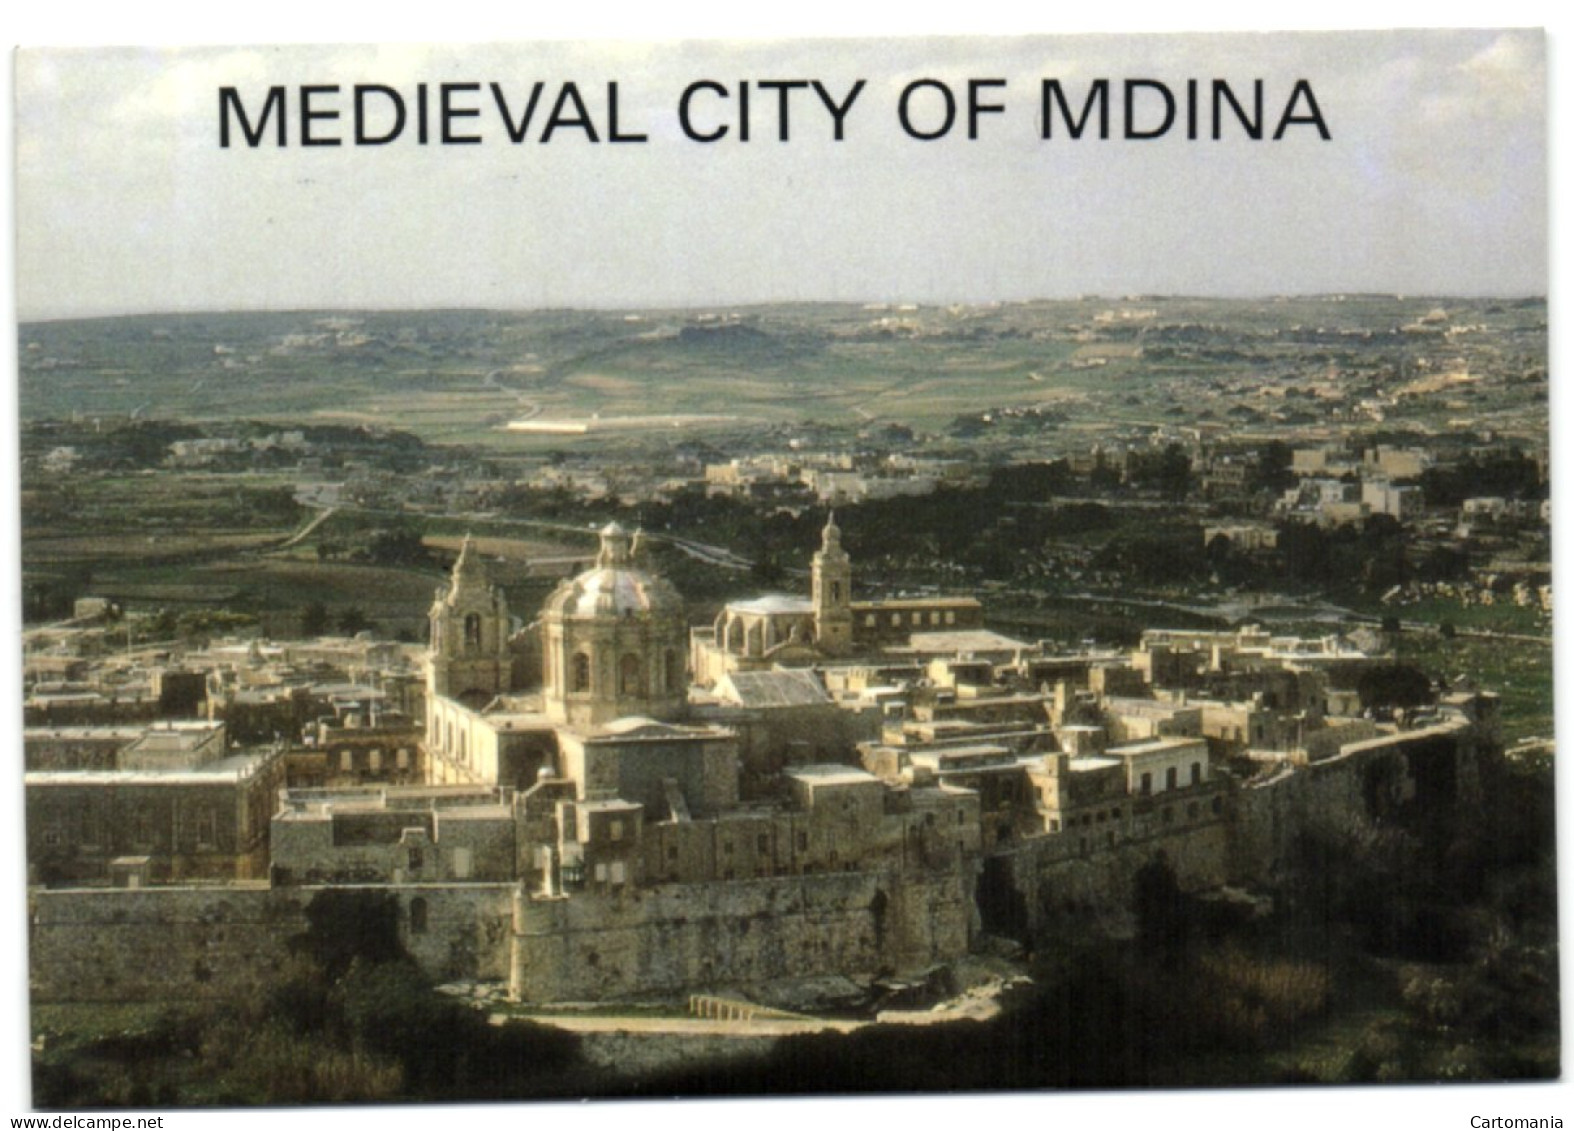 Medieval City Of Mdina - Malta - Malta